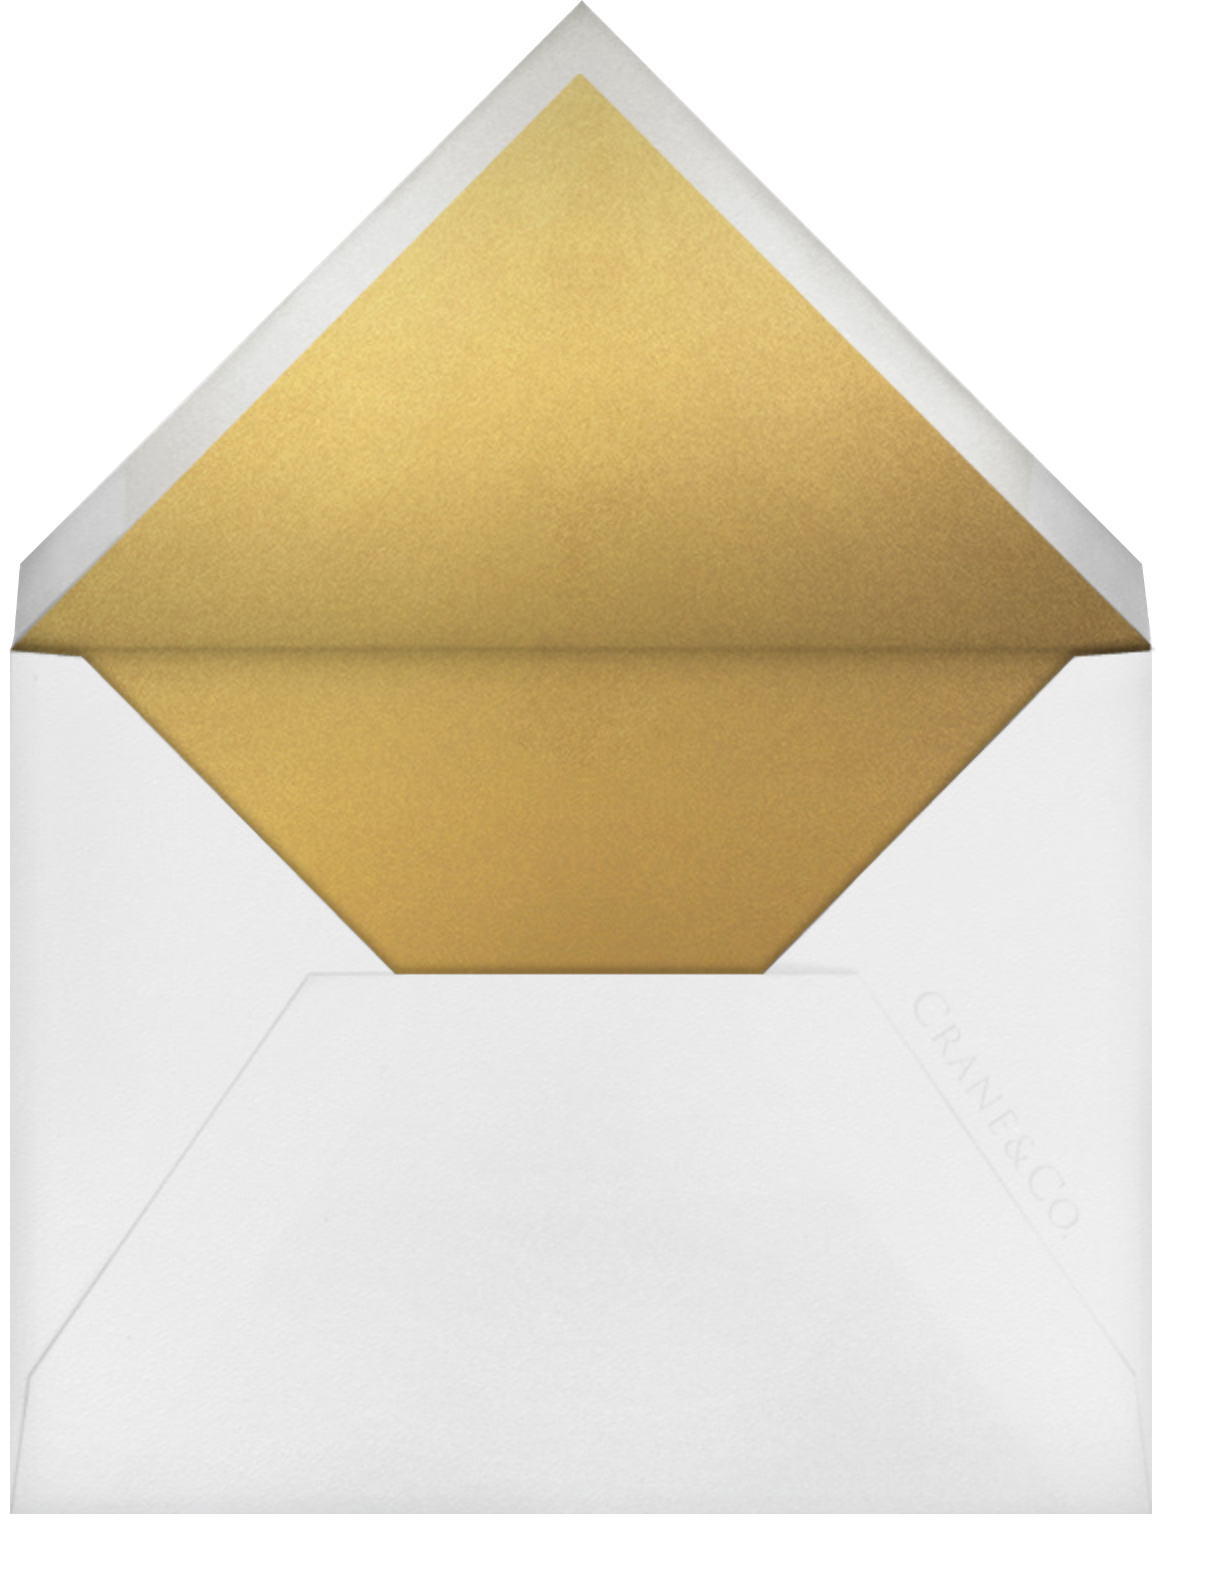 Collins Avenue - Medium Gold - Crane & Co. - Envelope